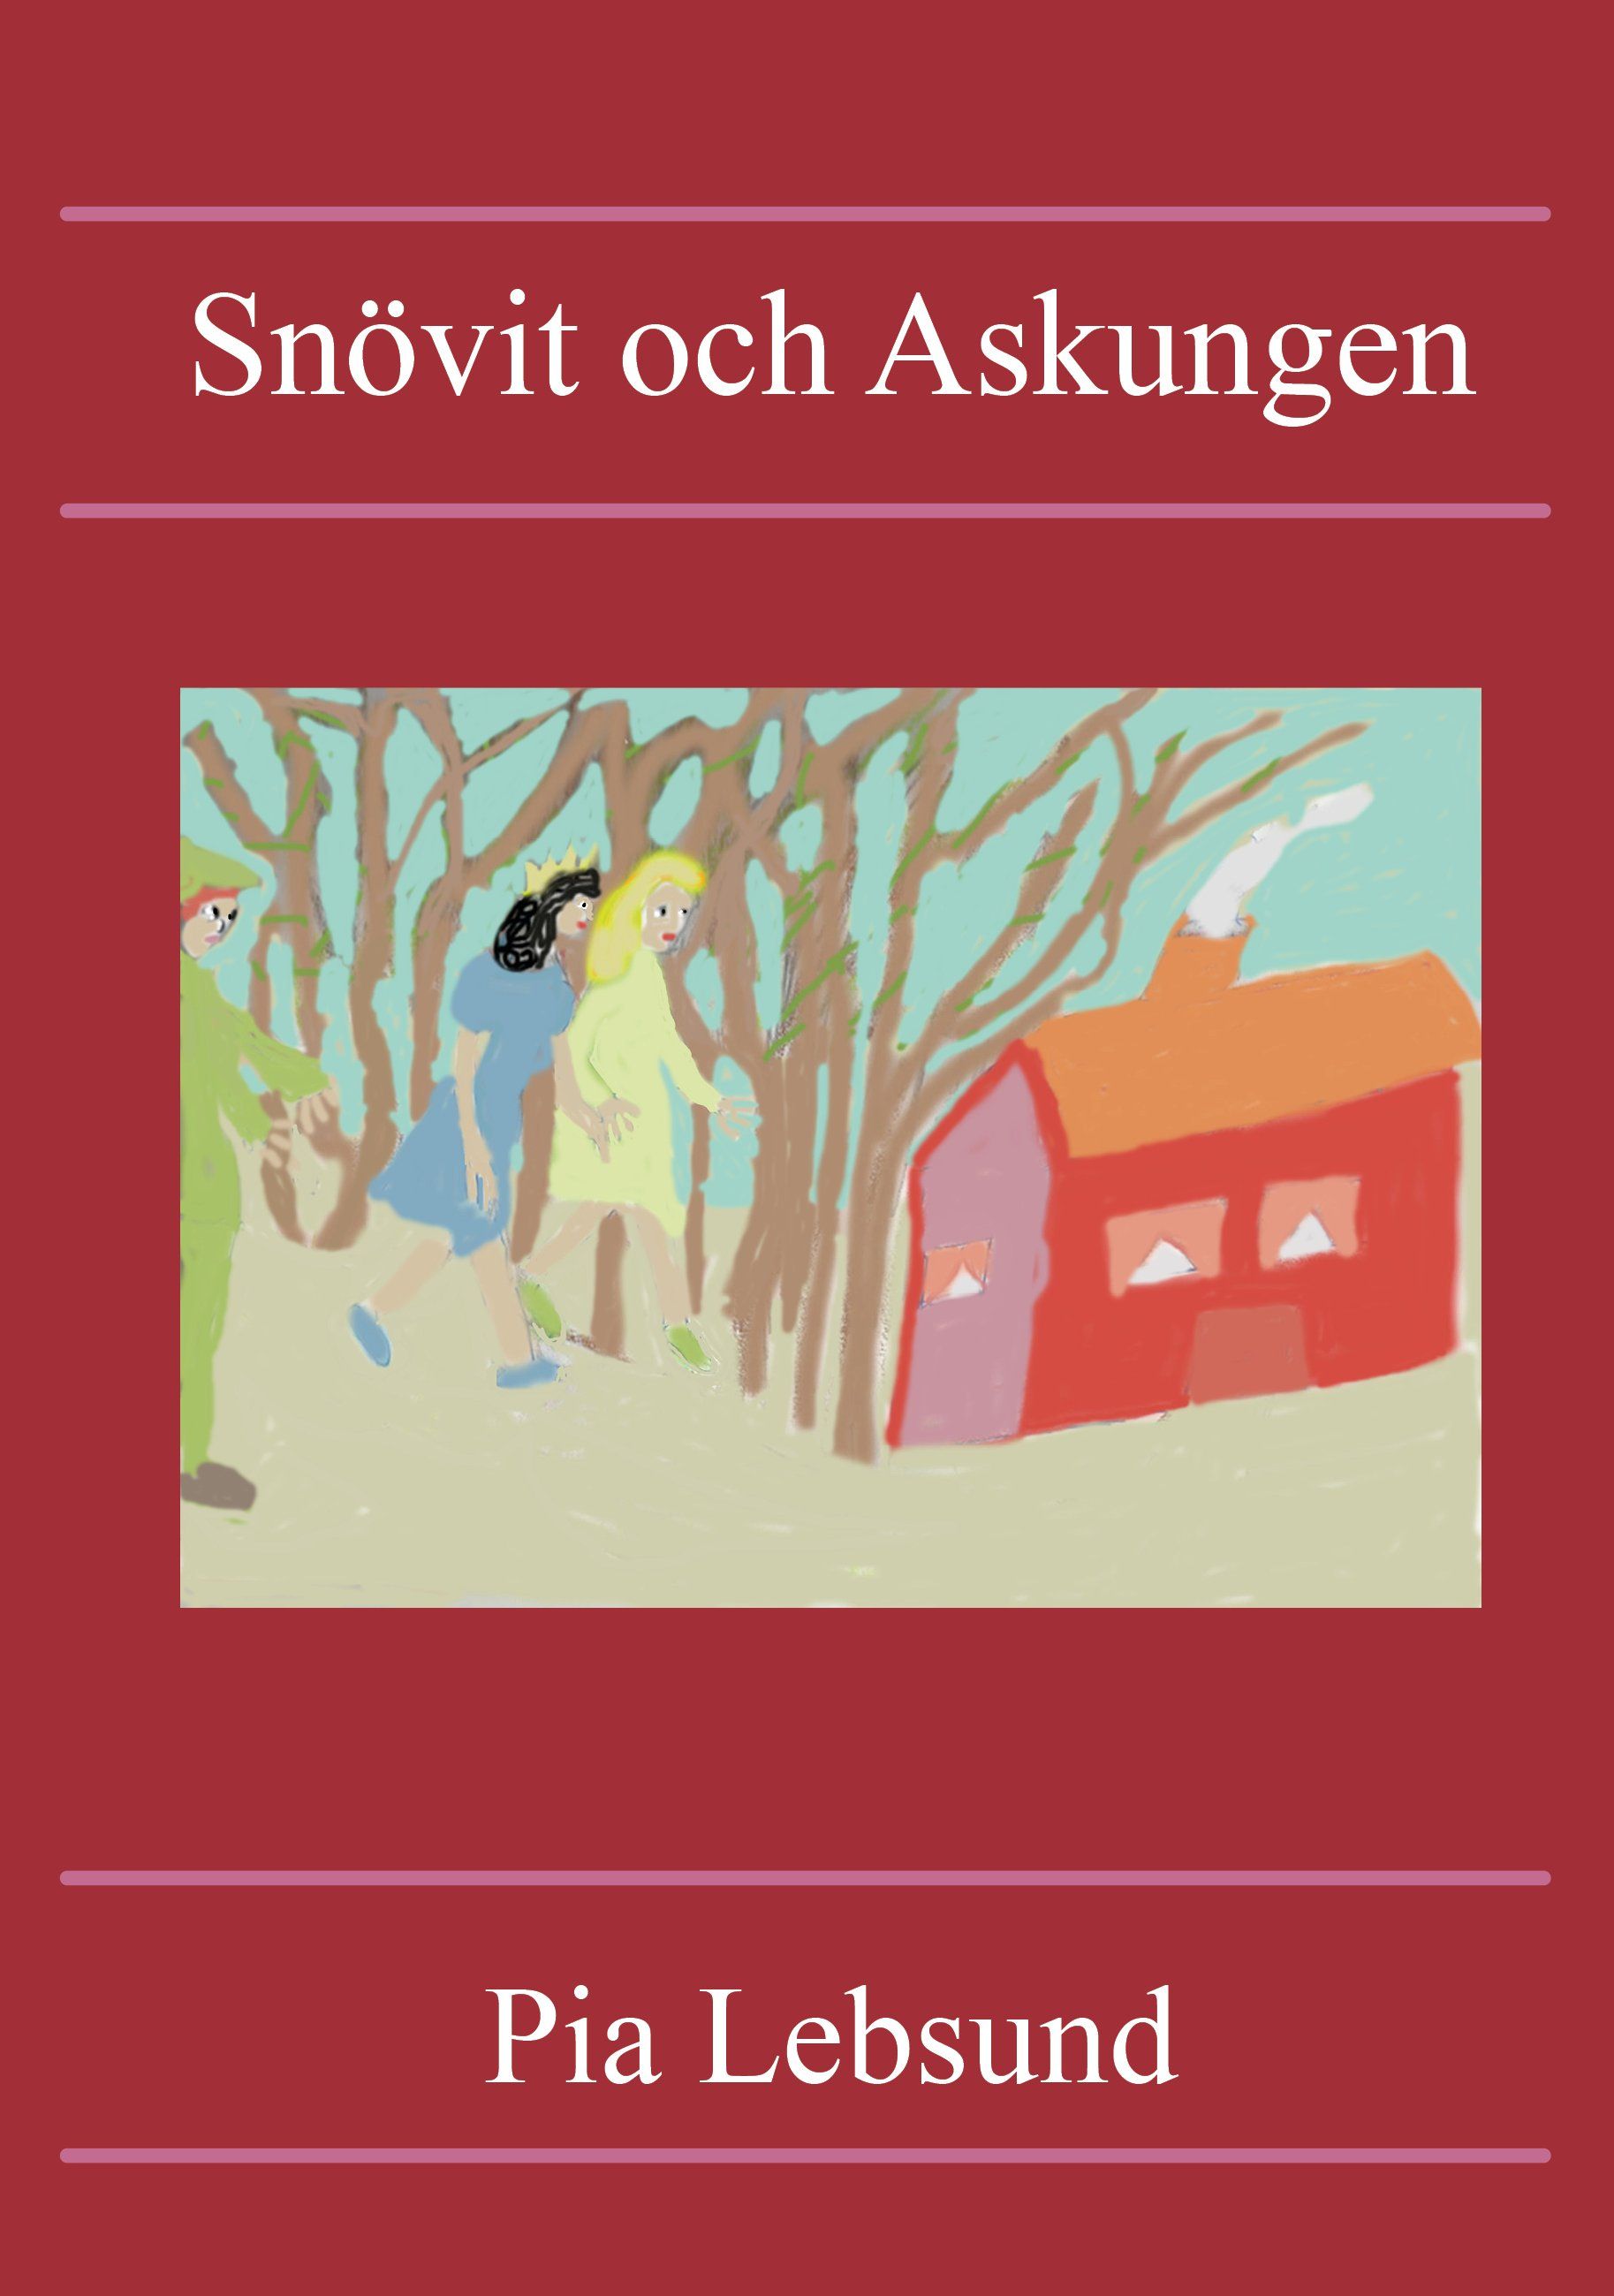 Snövit och Askungen, e-bok av Pia Lebsund